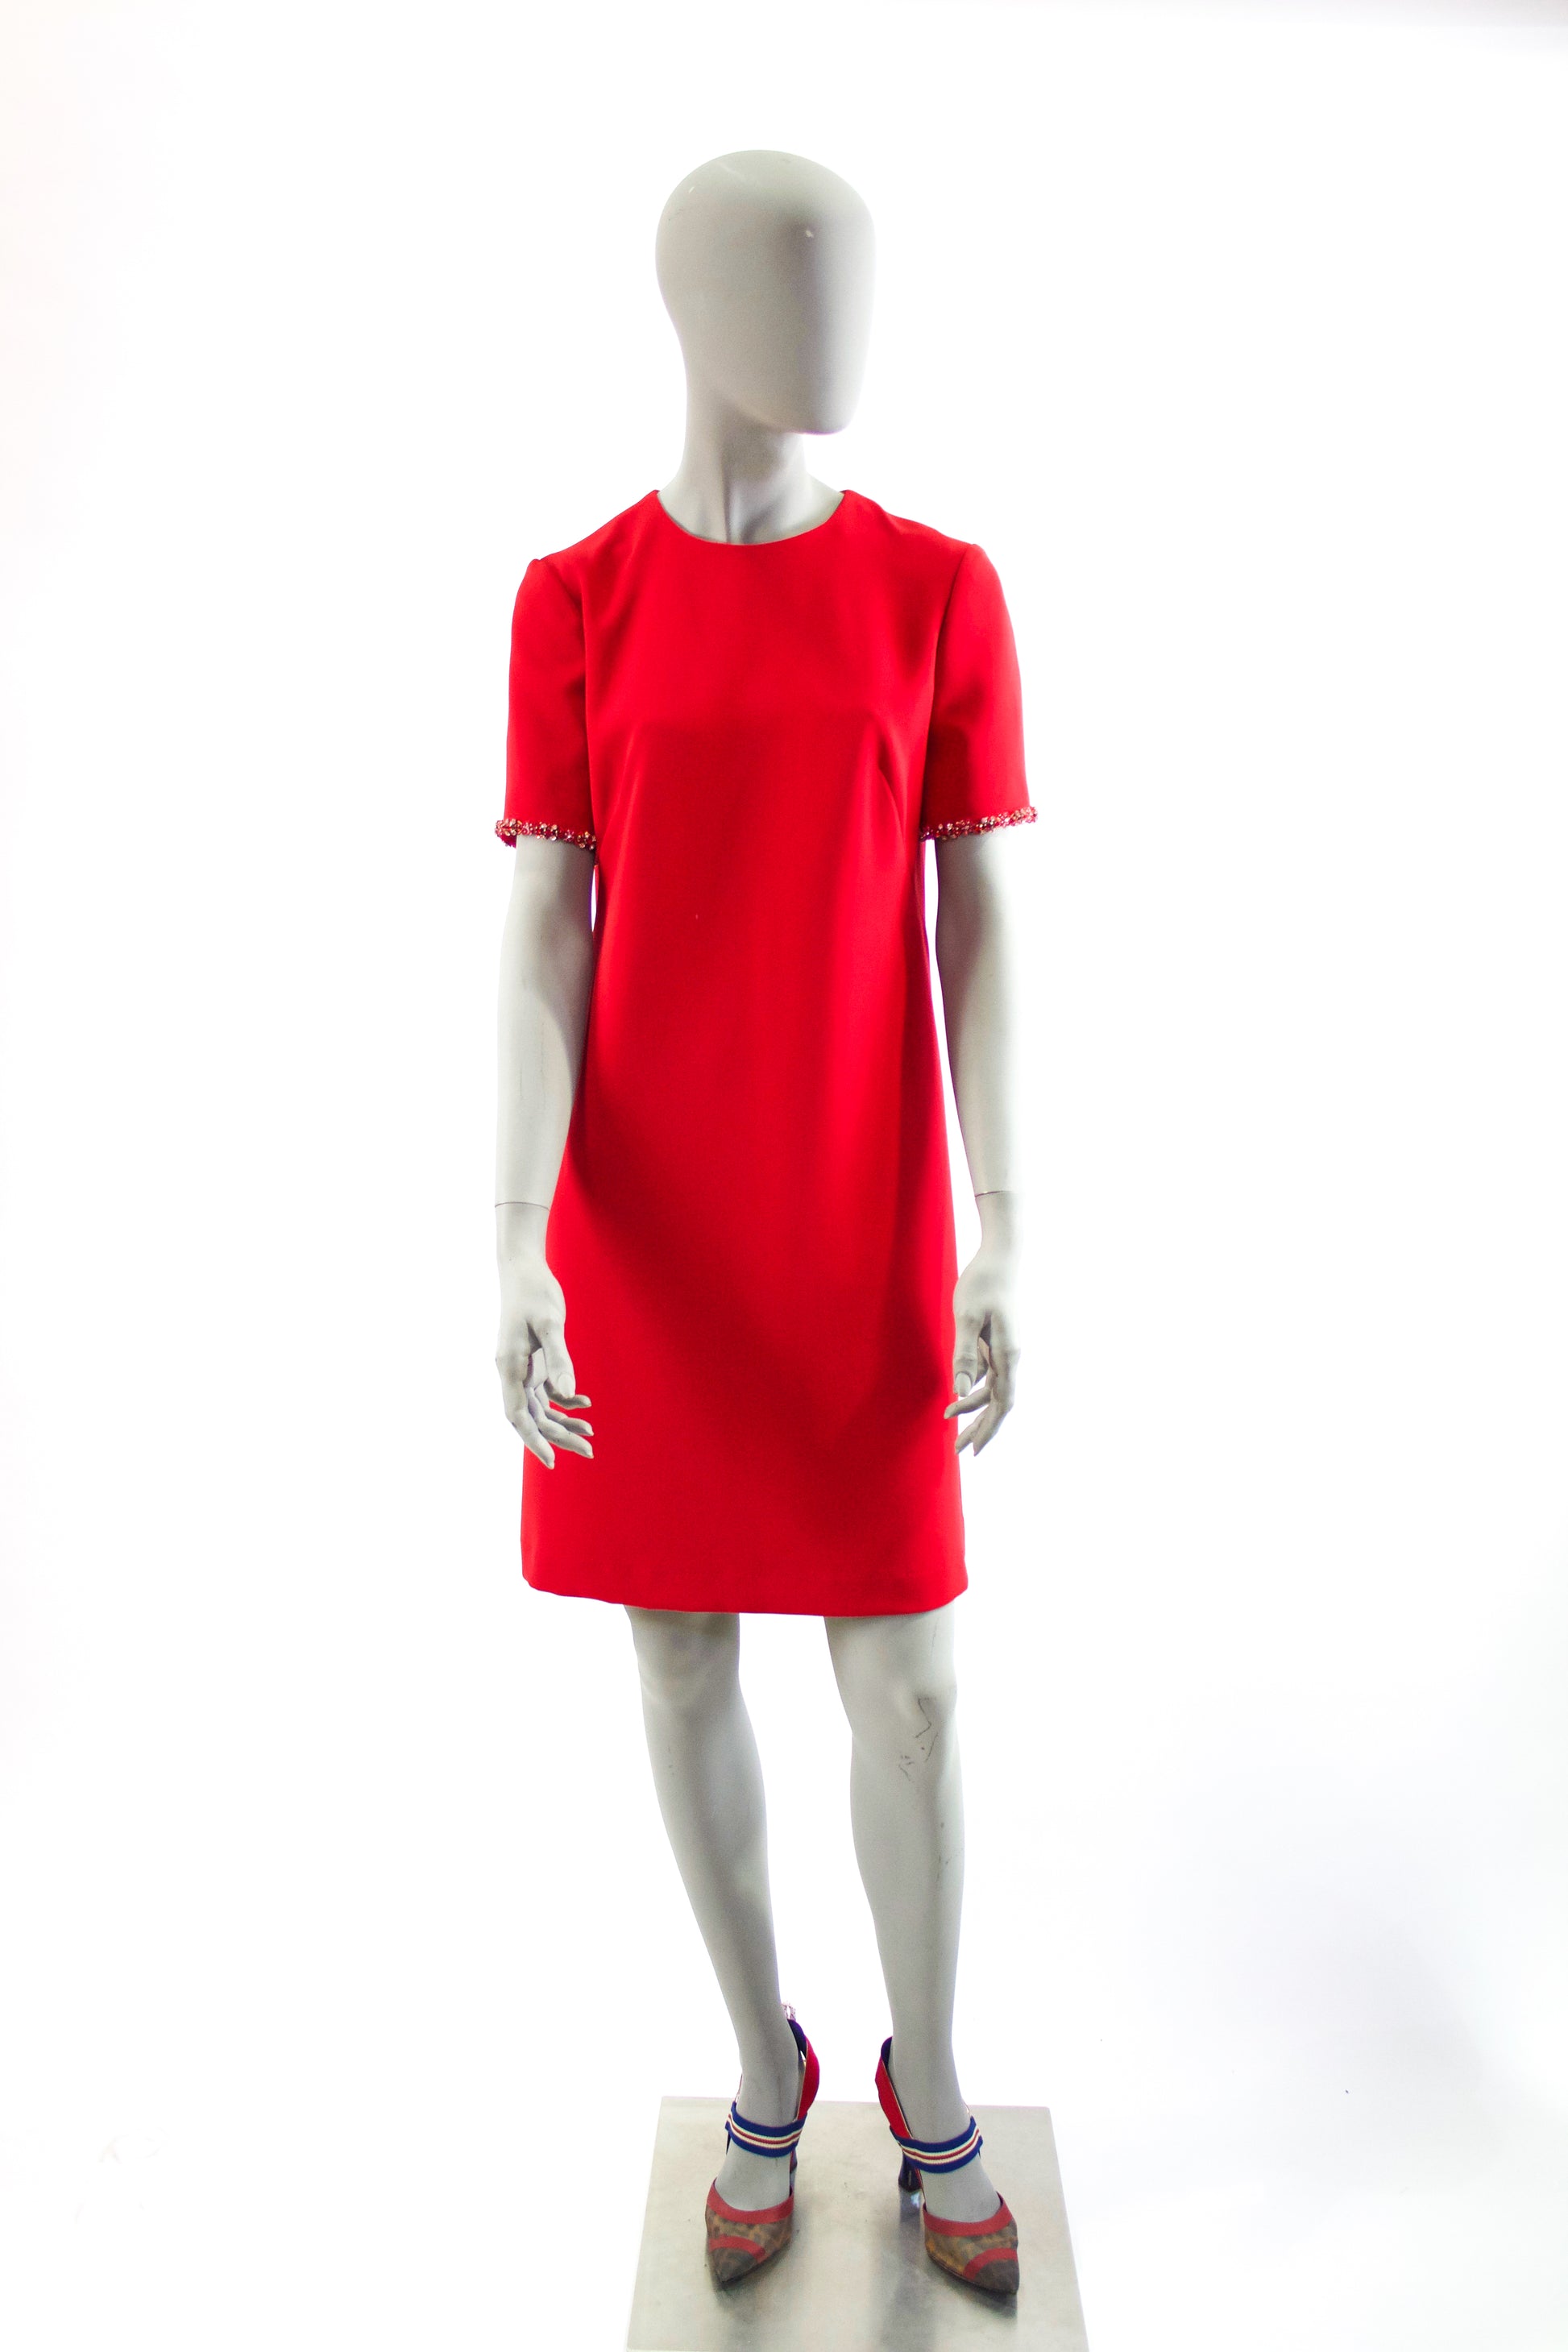 Jewel Collar A-Line Dress - Ruby Red Pink Tartan